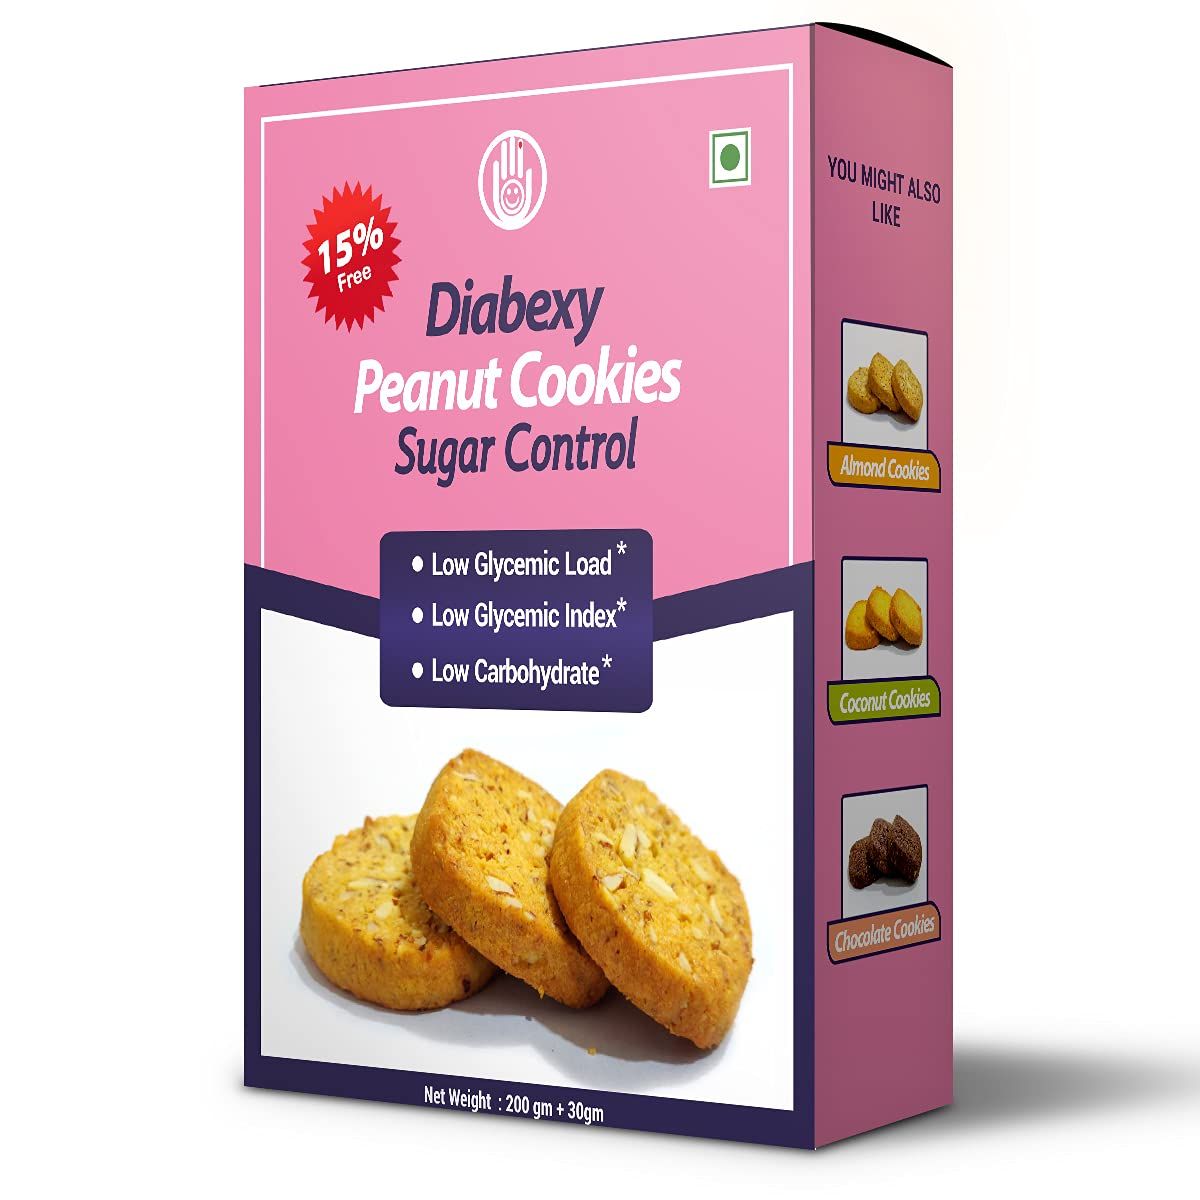 Diabexy Peanut Cookie Sugar Control for Diabetes Image